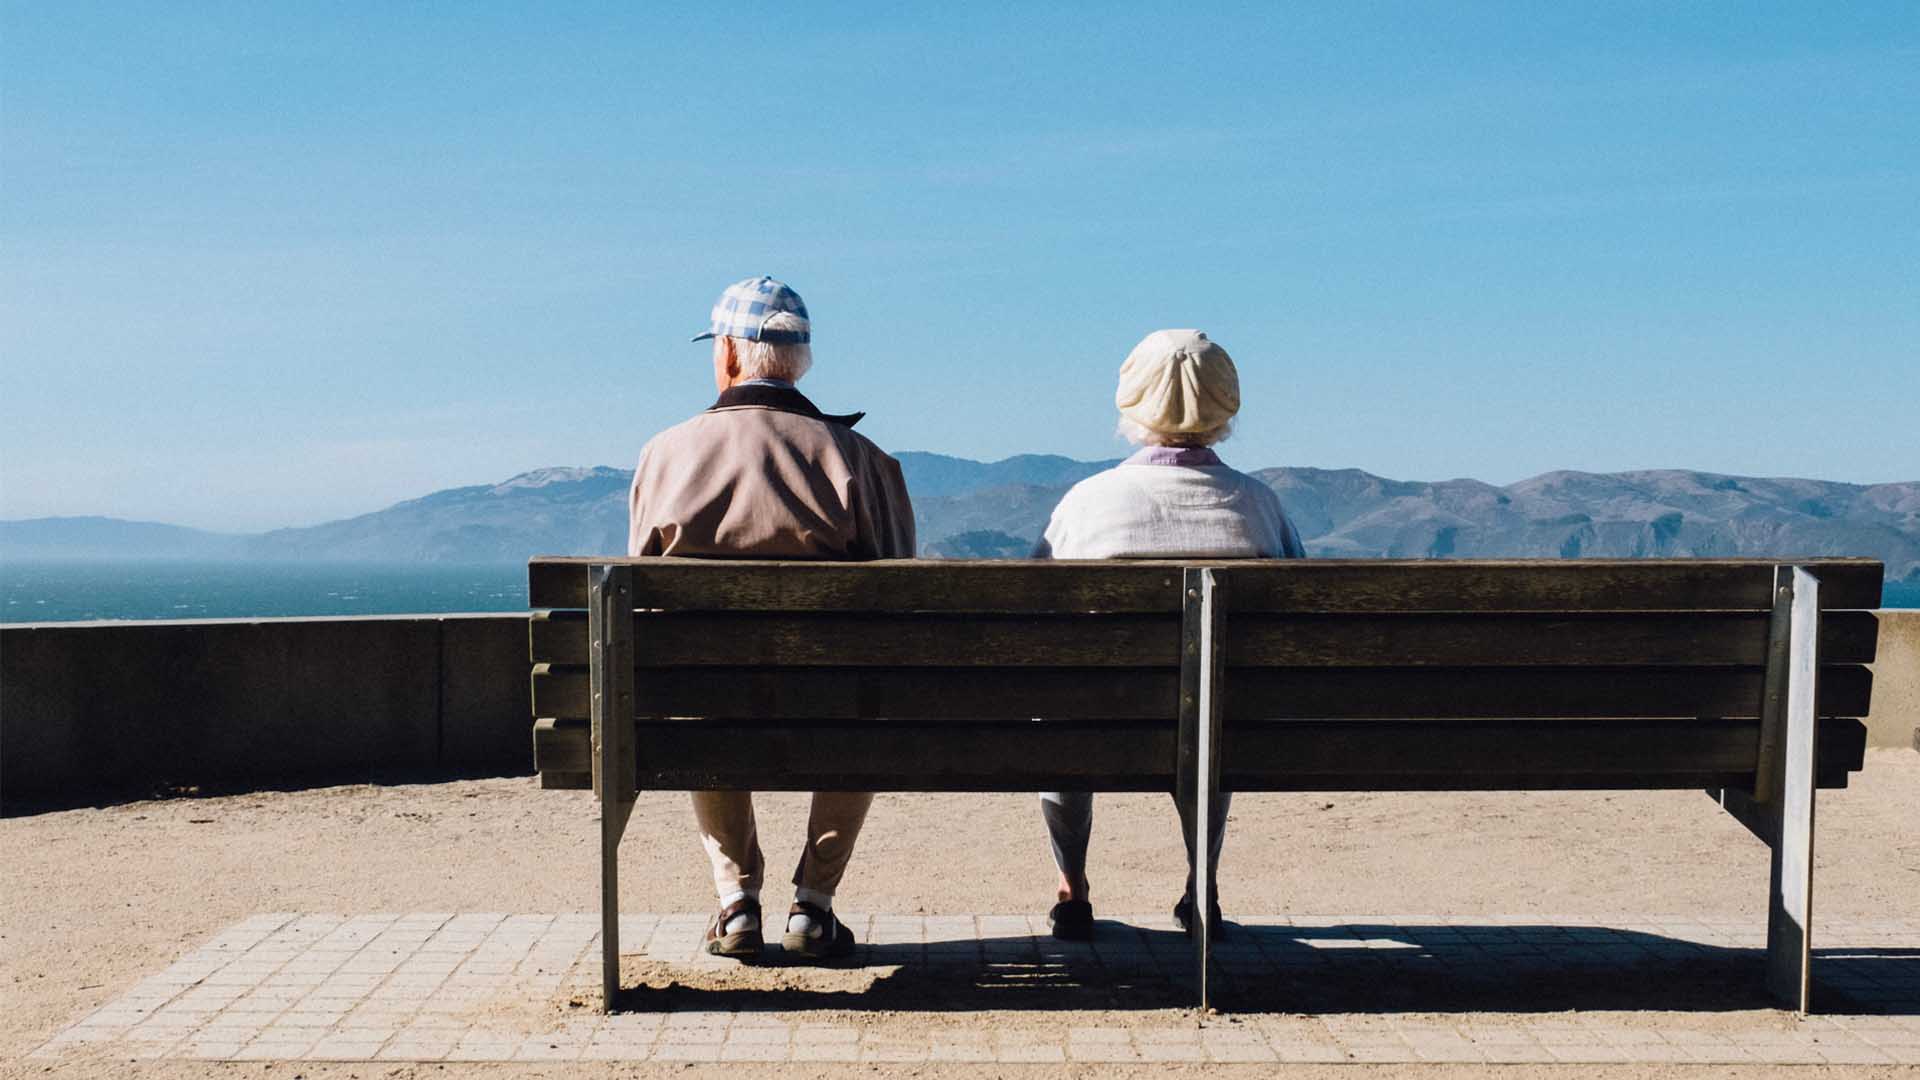 Cómo enfrentarse a la longevidad: esto es lo que te diría tu yo de 100 años